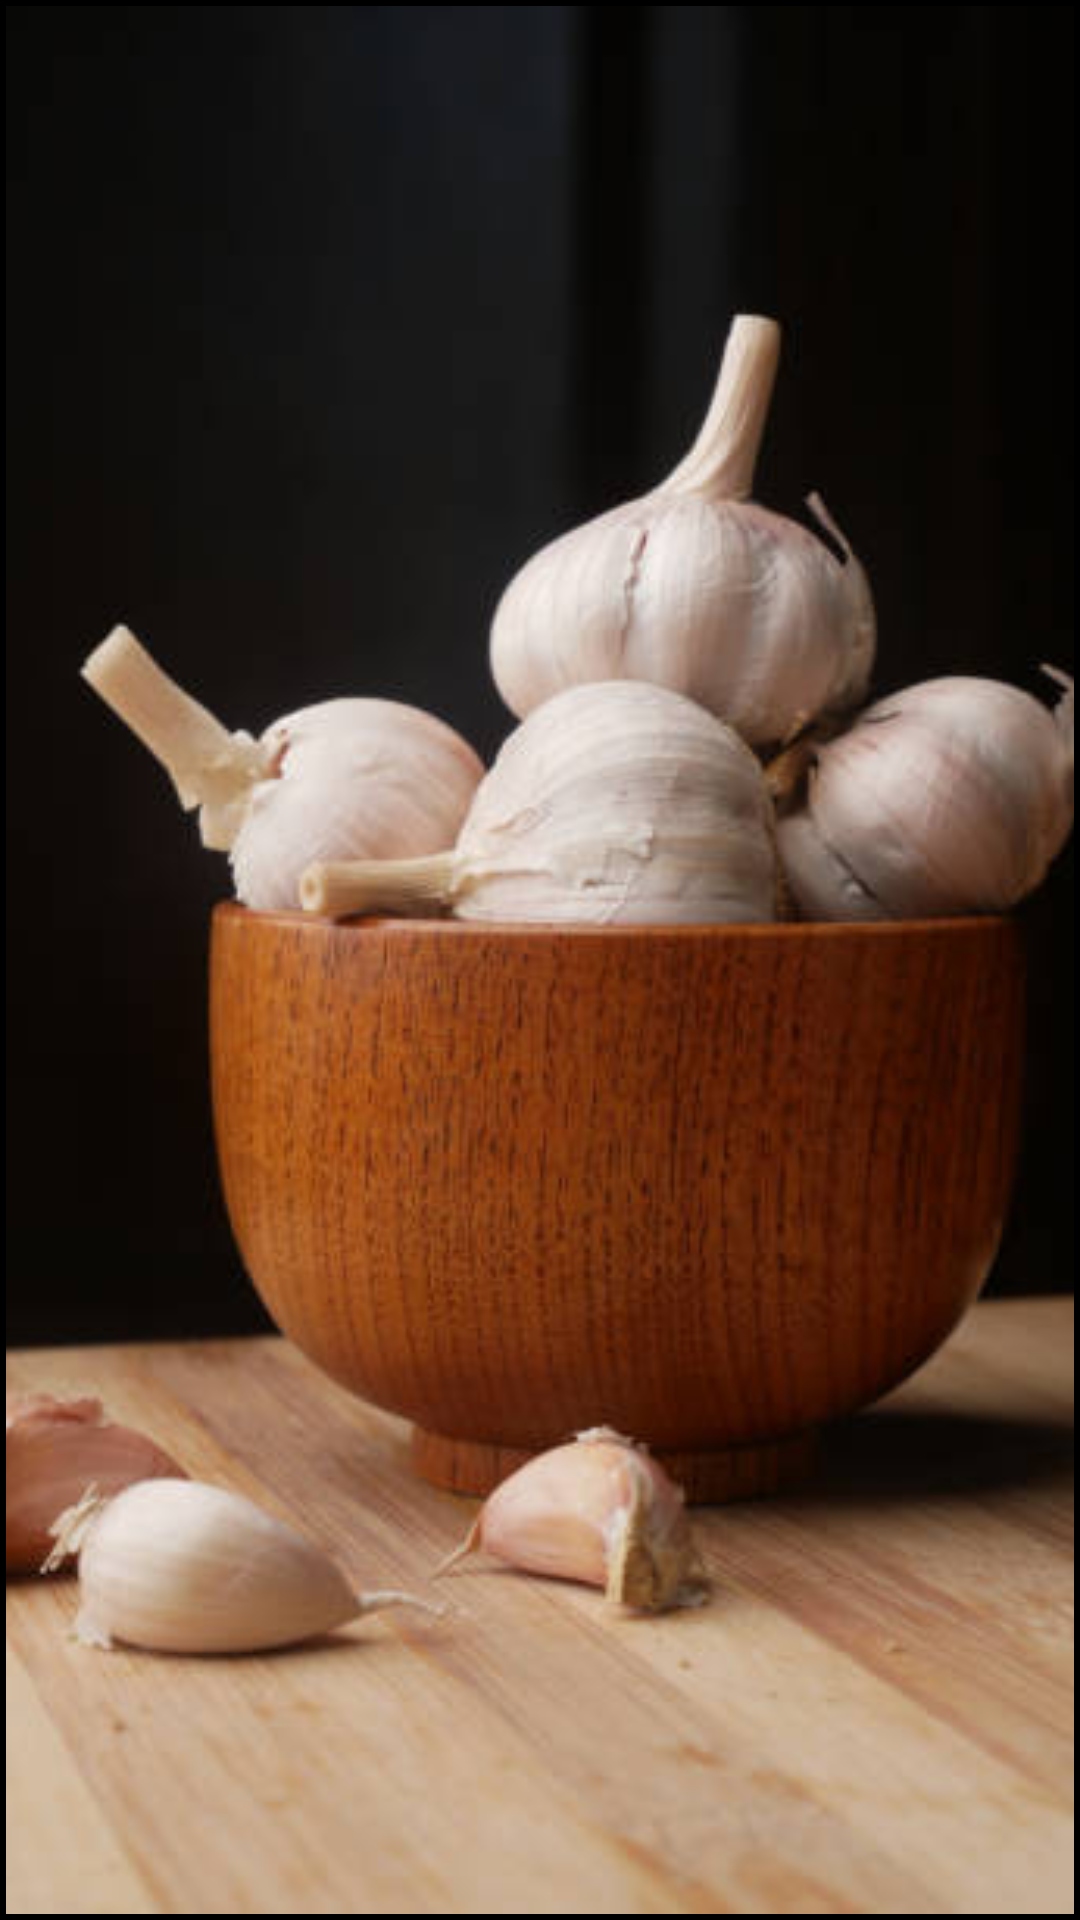 Benefits of Garlic: बल्ड प्रेशर से लेकर मोटापे को भी कंट्रोल करता है लहसुन, जानिए सेवन करने का तरीका